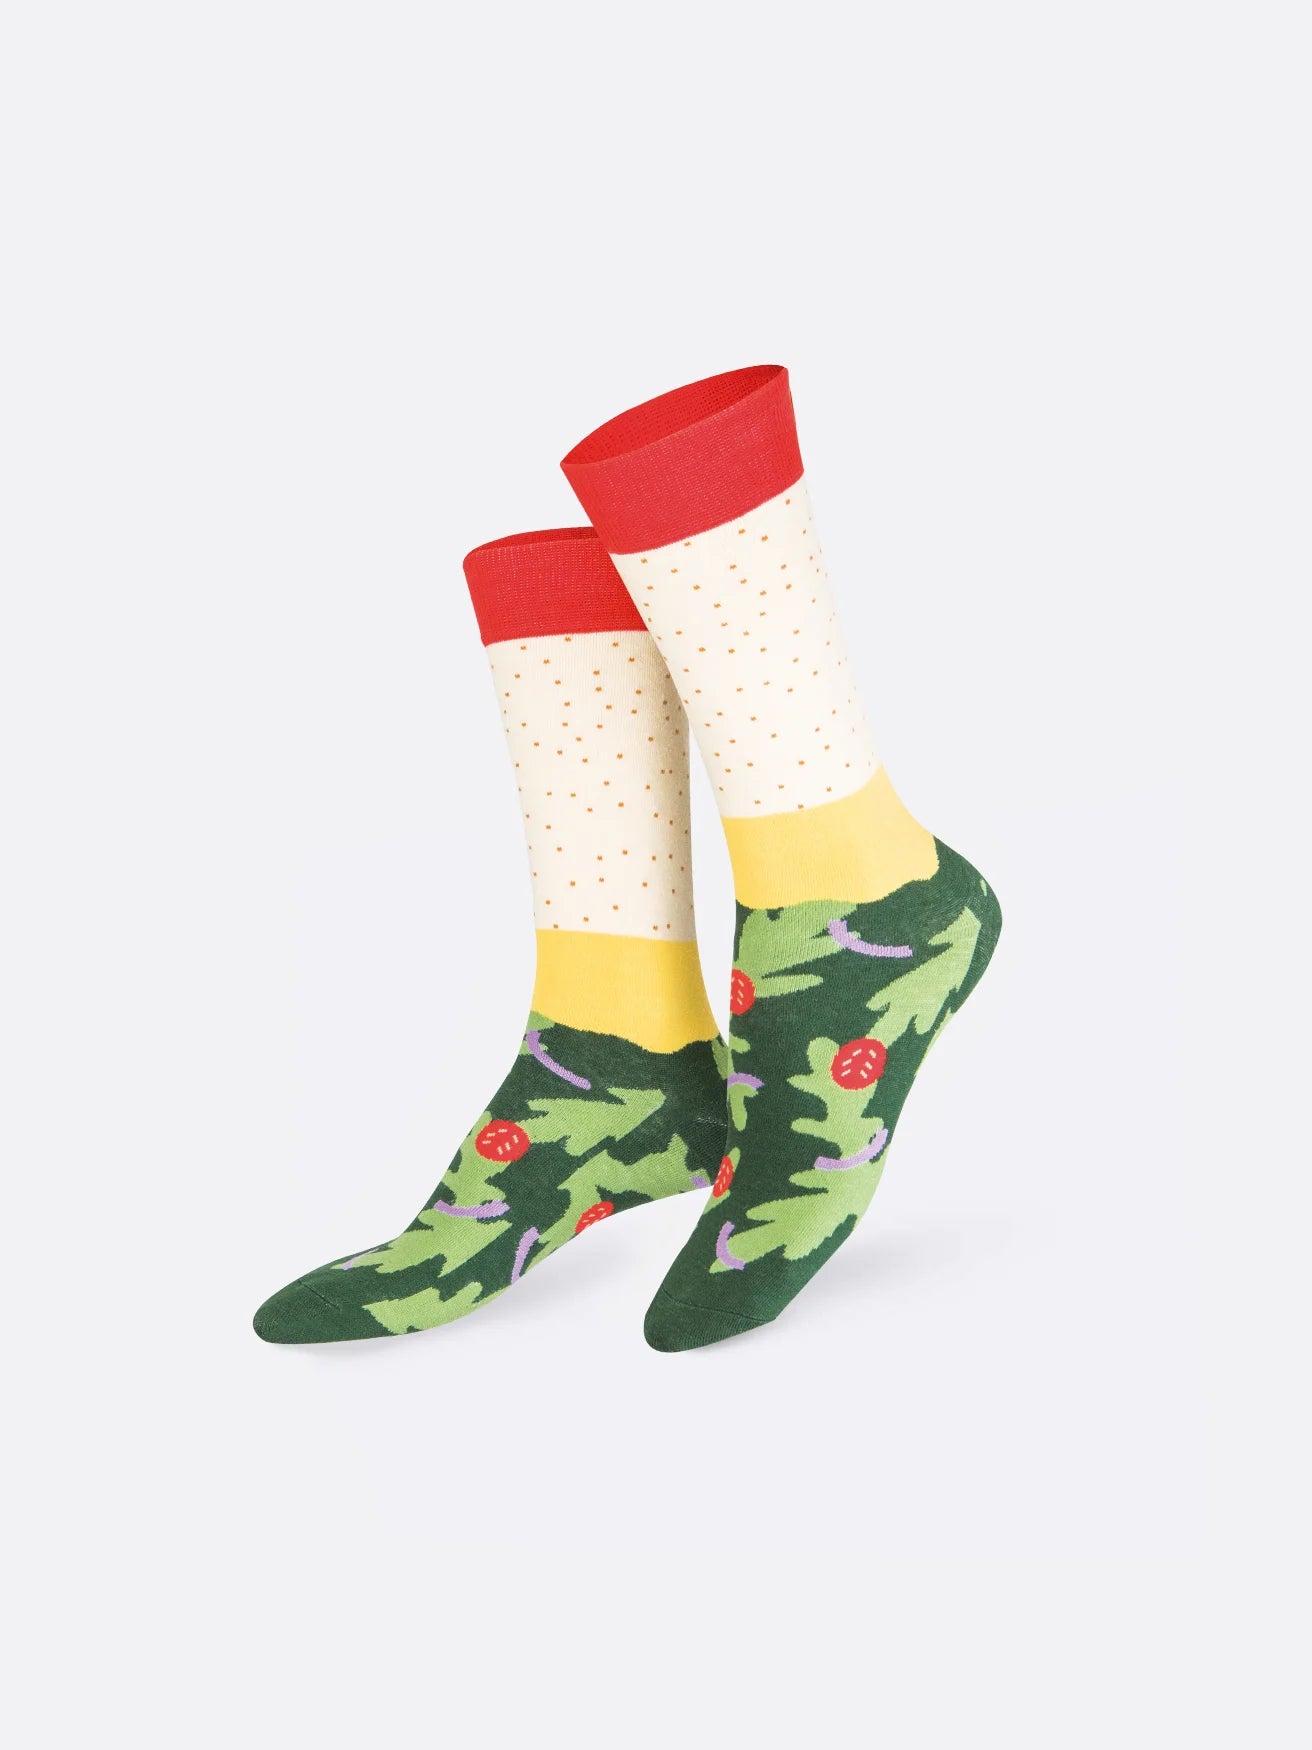 Socks - Napoli pîzza vegan | Eat my socks